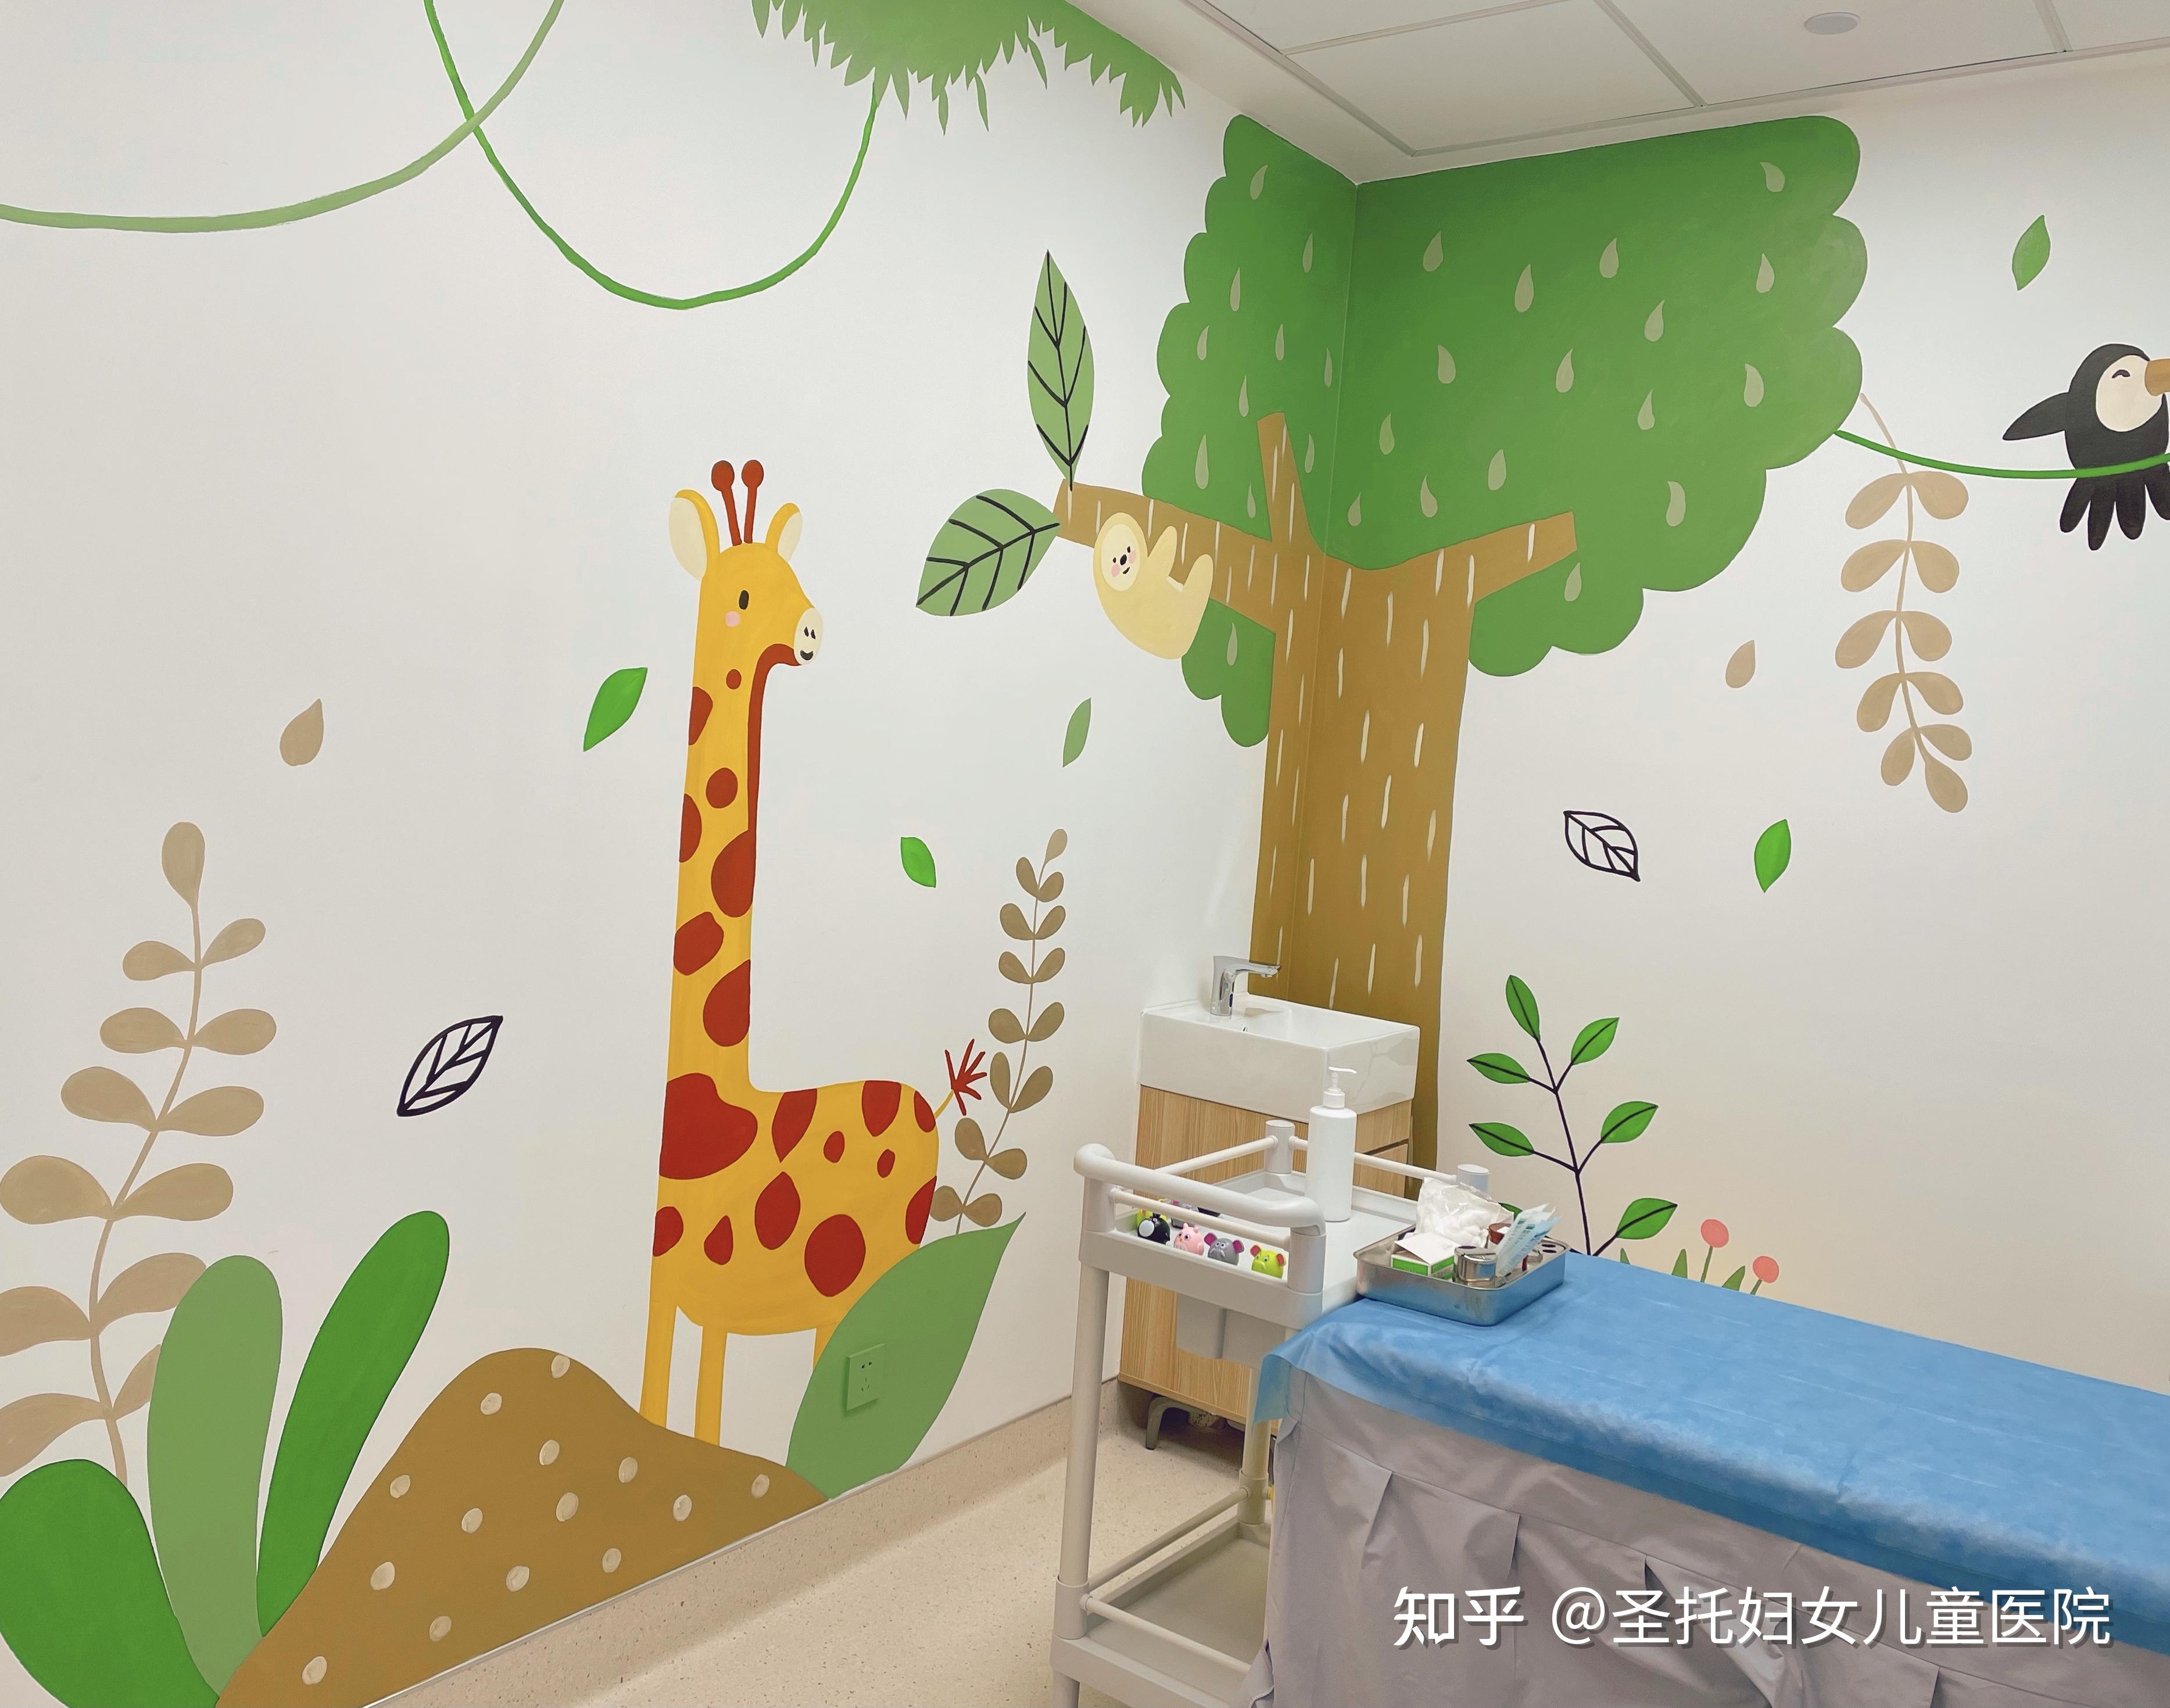 儿科门诊区域手绘墙面超级可爱 超级治愈让每个宝宝都不再害怕去医院